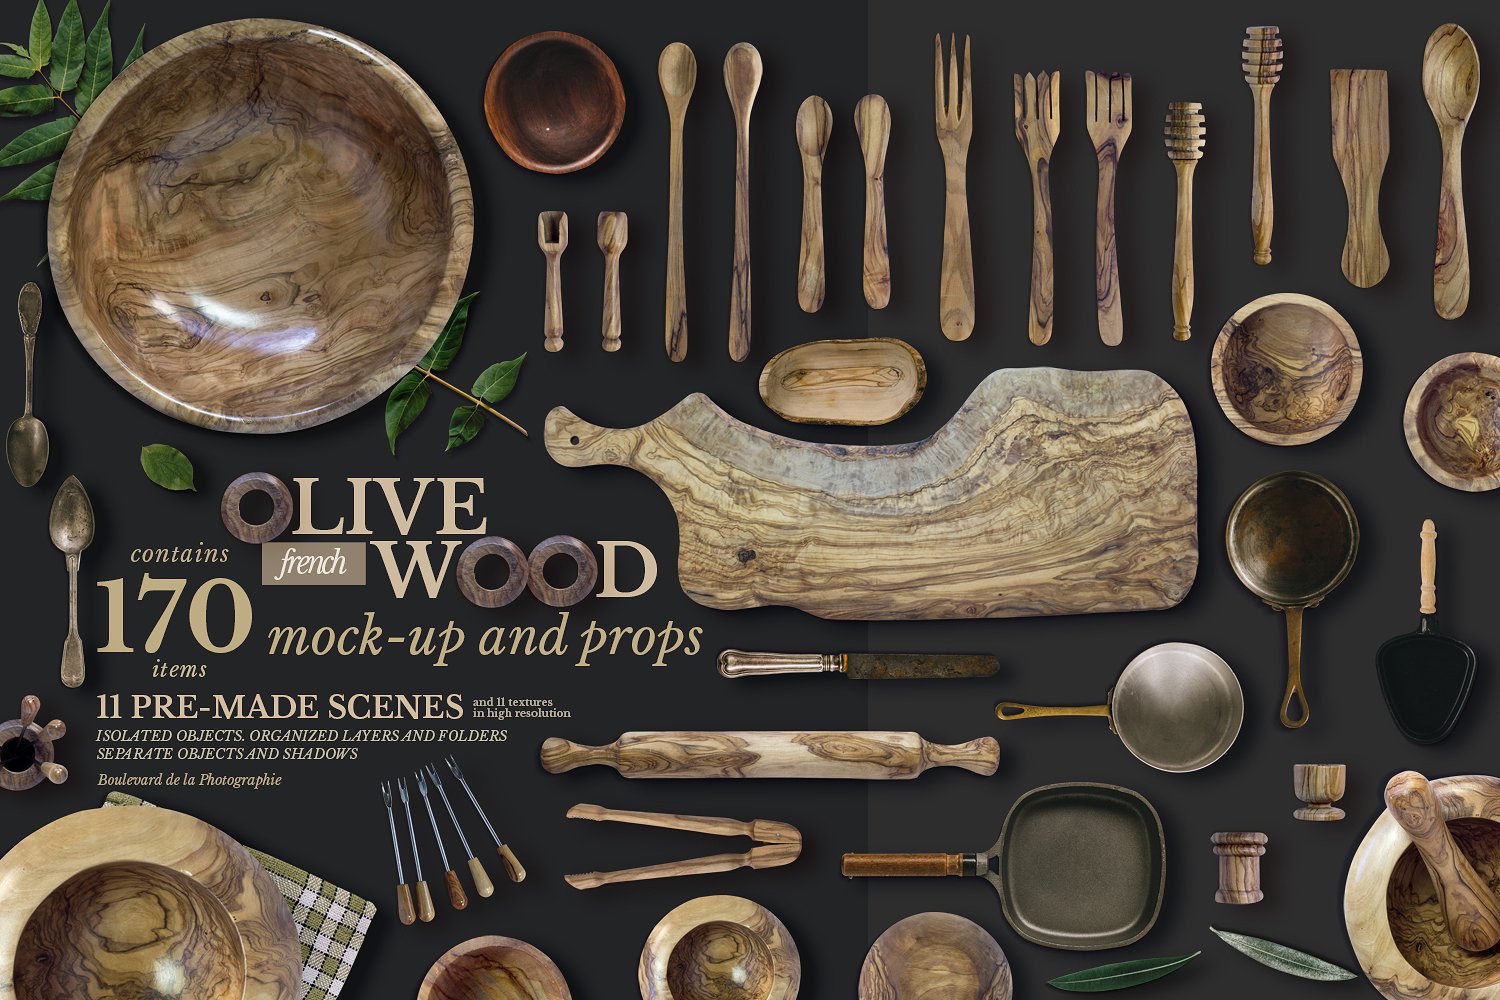 高端法国橄榄木厨房用品展示模型mockups #139668